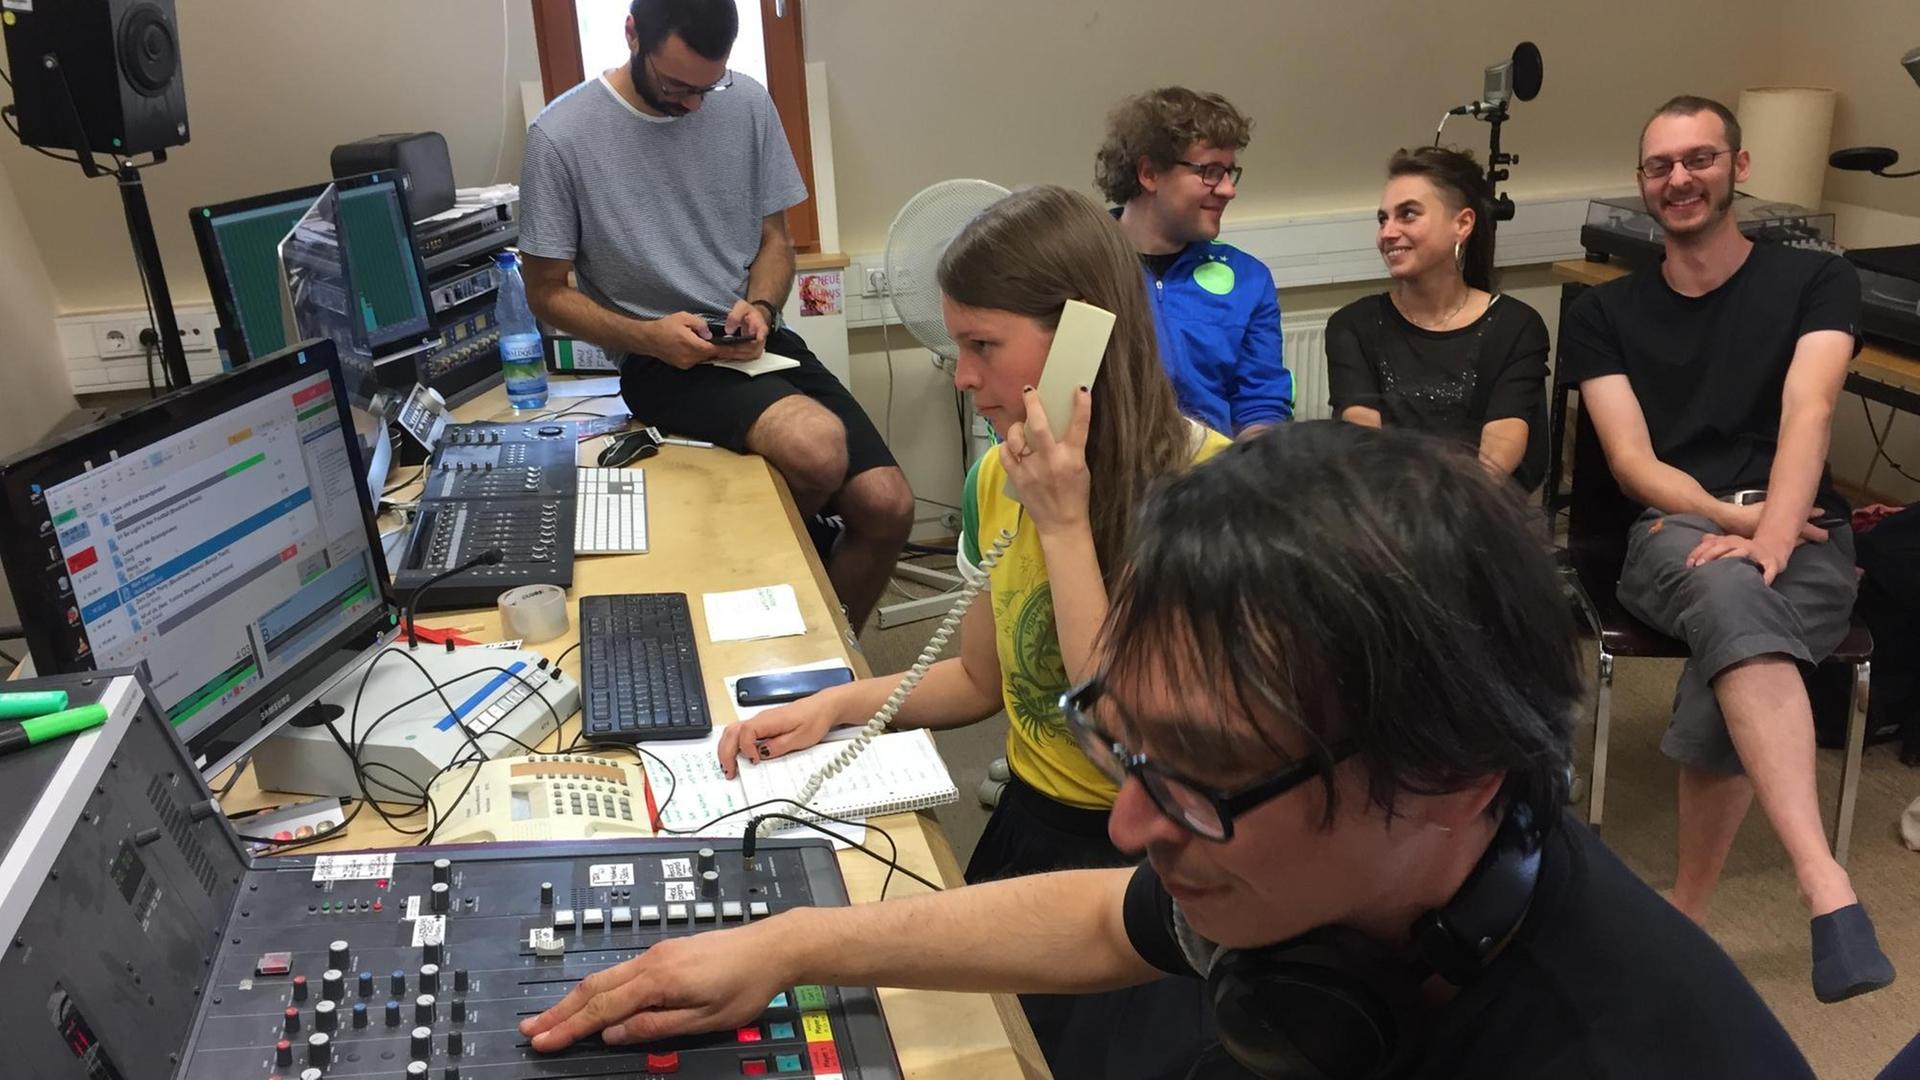 Sechs junge Menschen sitzen in einem Radiostudio, ein Student bedient das Mischpult während eine Studentin telefoniert